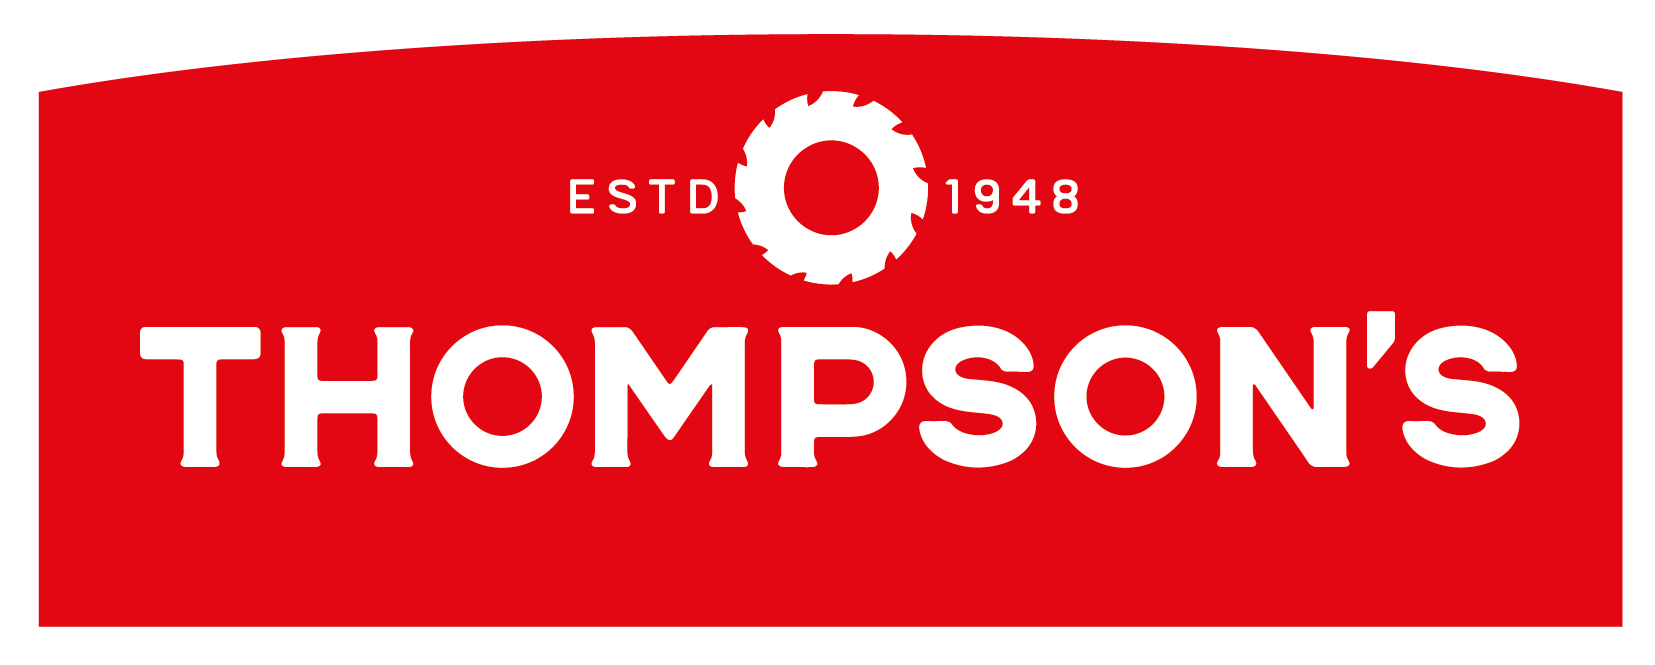 George Thompsons Ltd